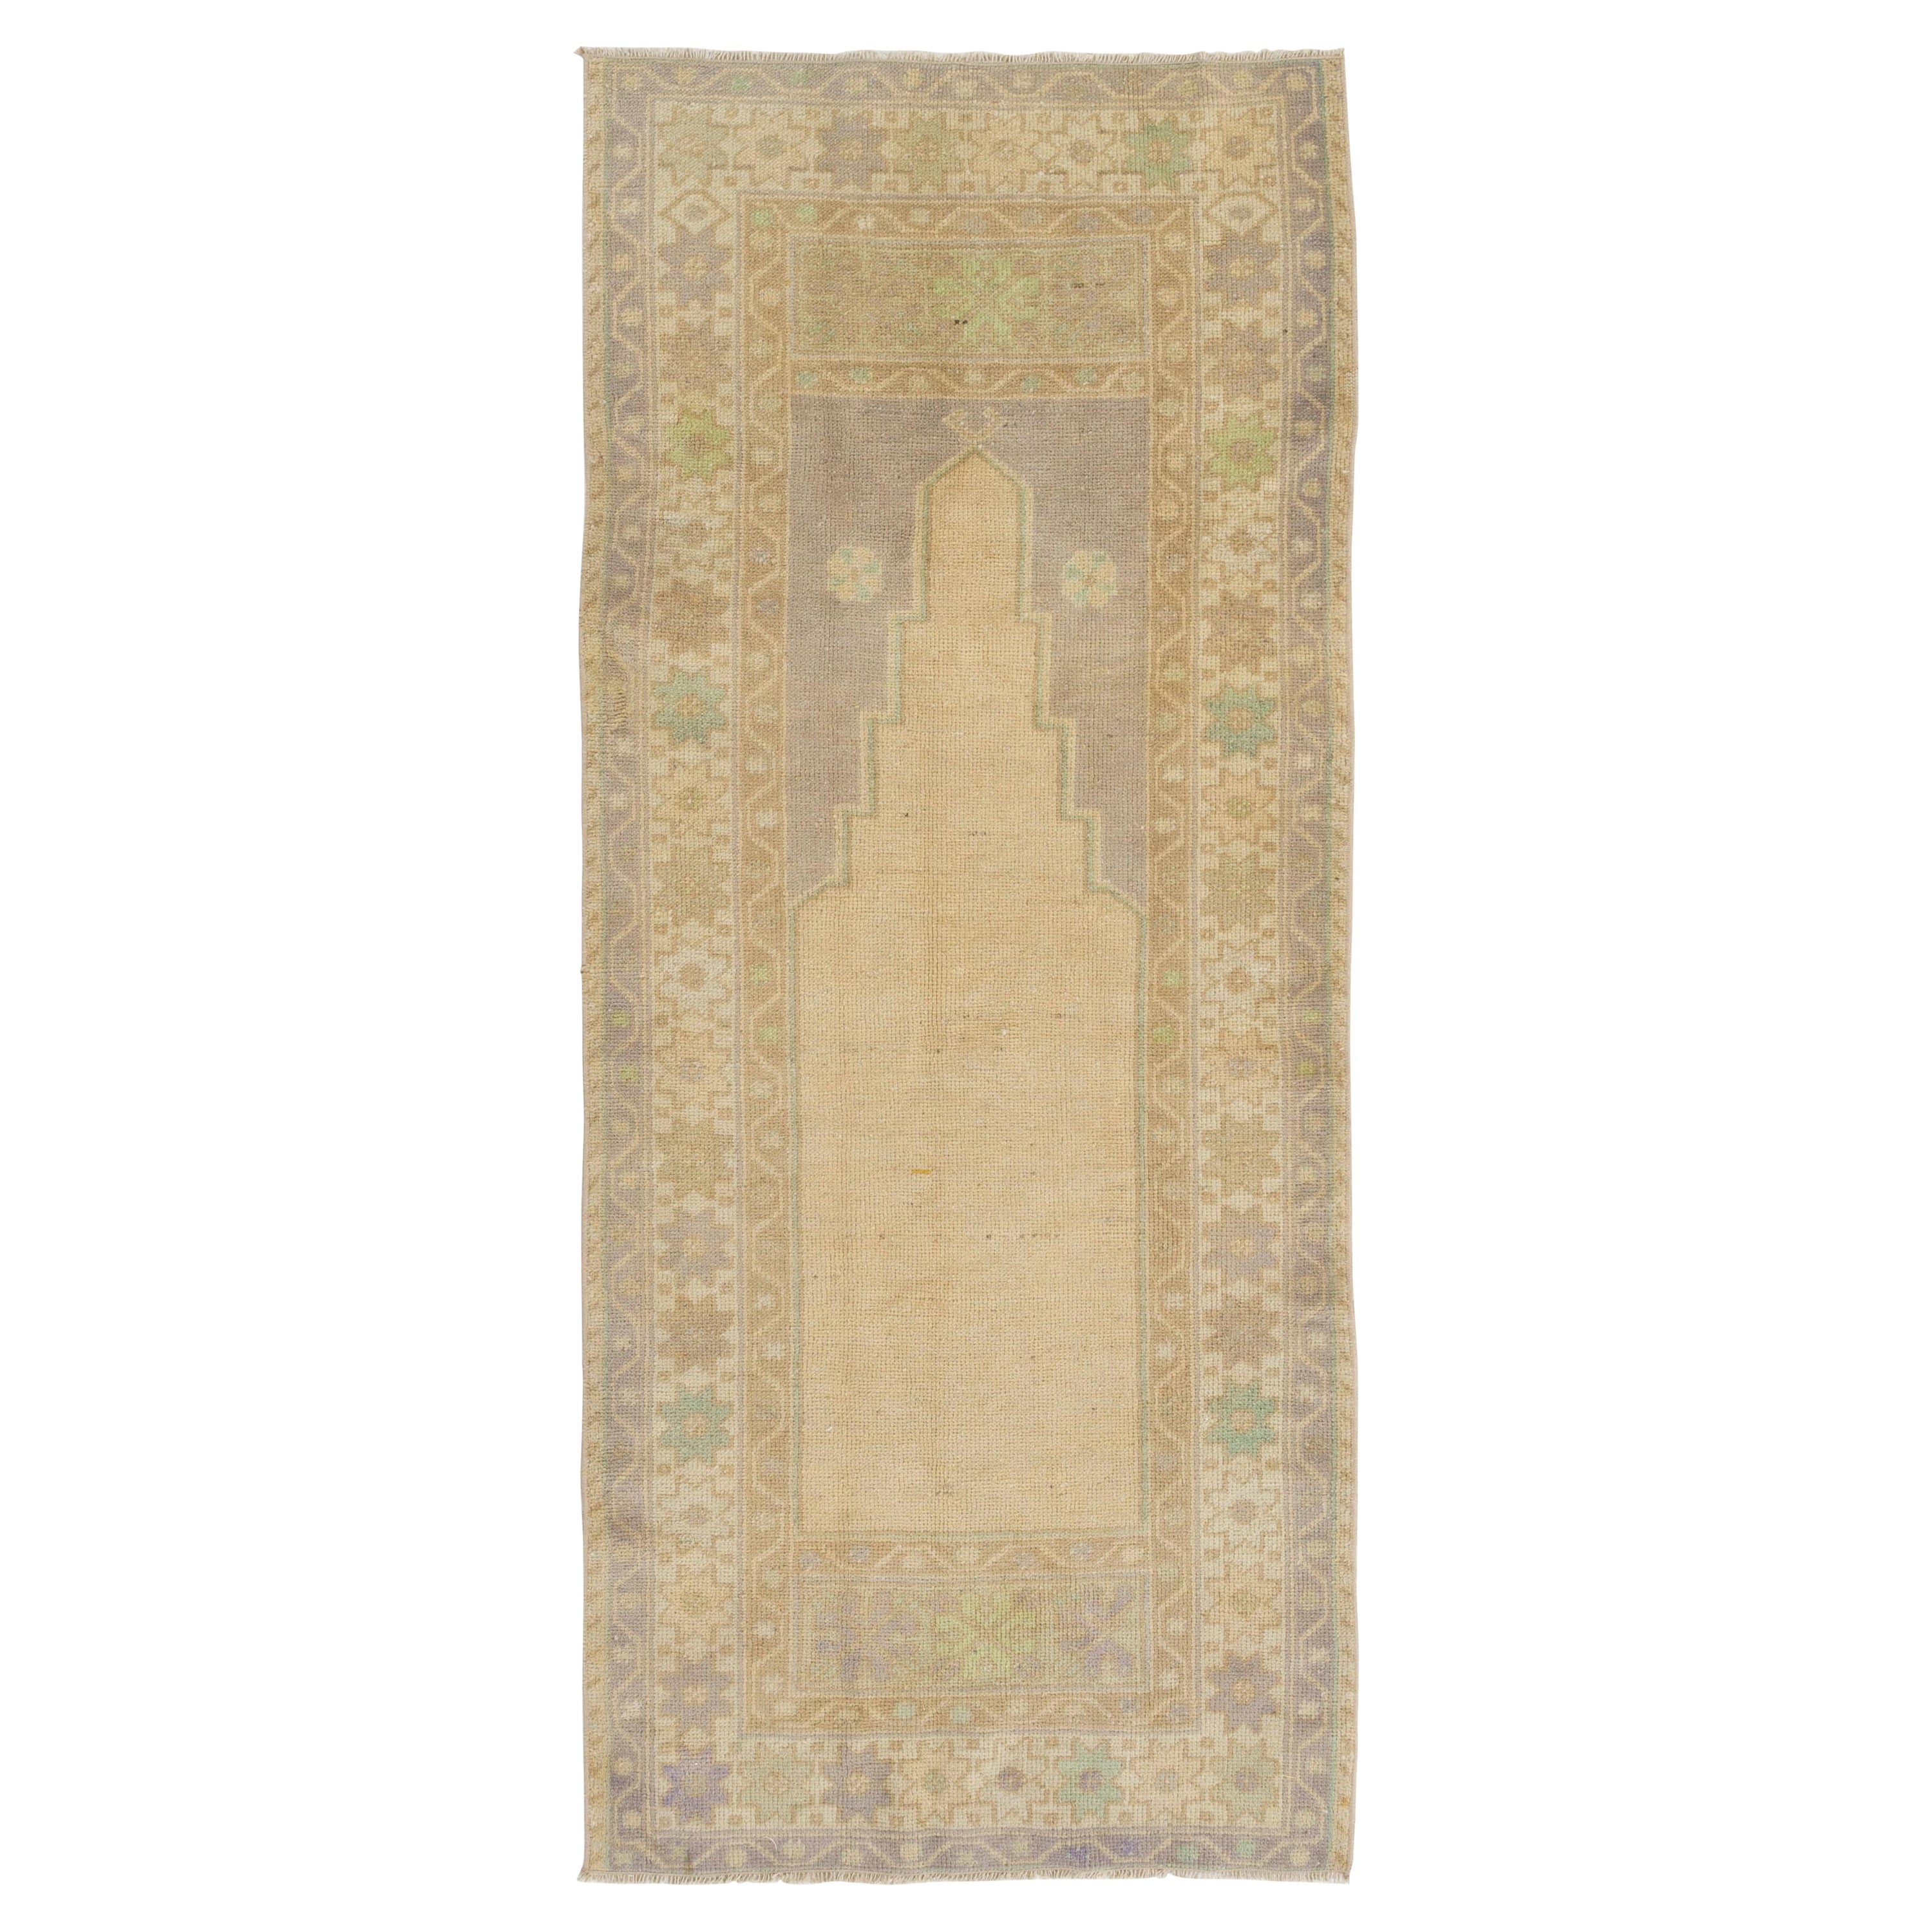 2.8x6.6 Ft Faded Turkish Prayer Rug, Vintage Handmade Accent Rug. Beige Door Mat For Sale